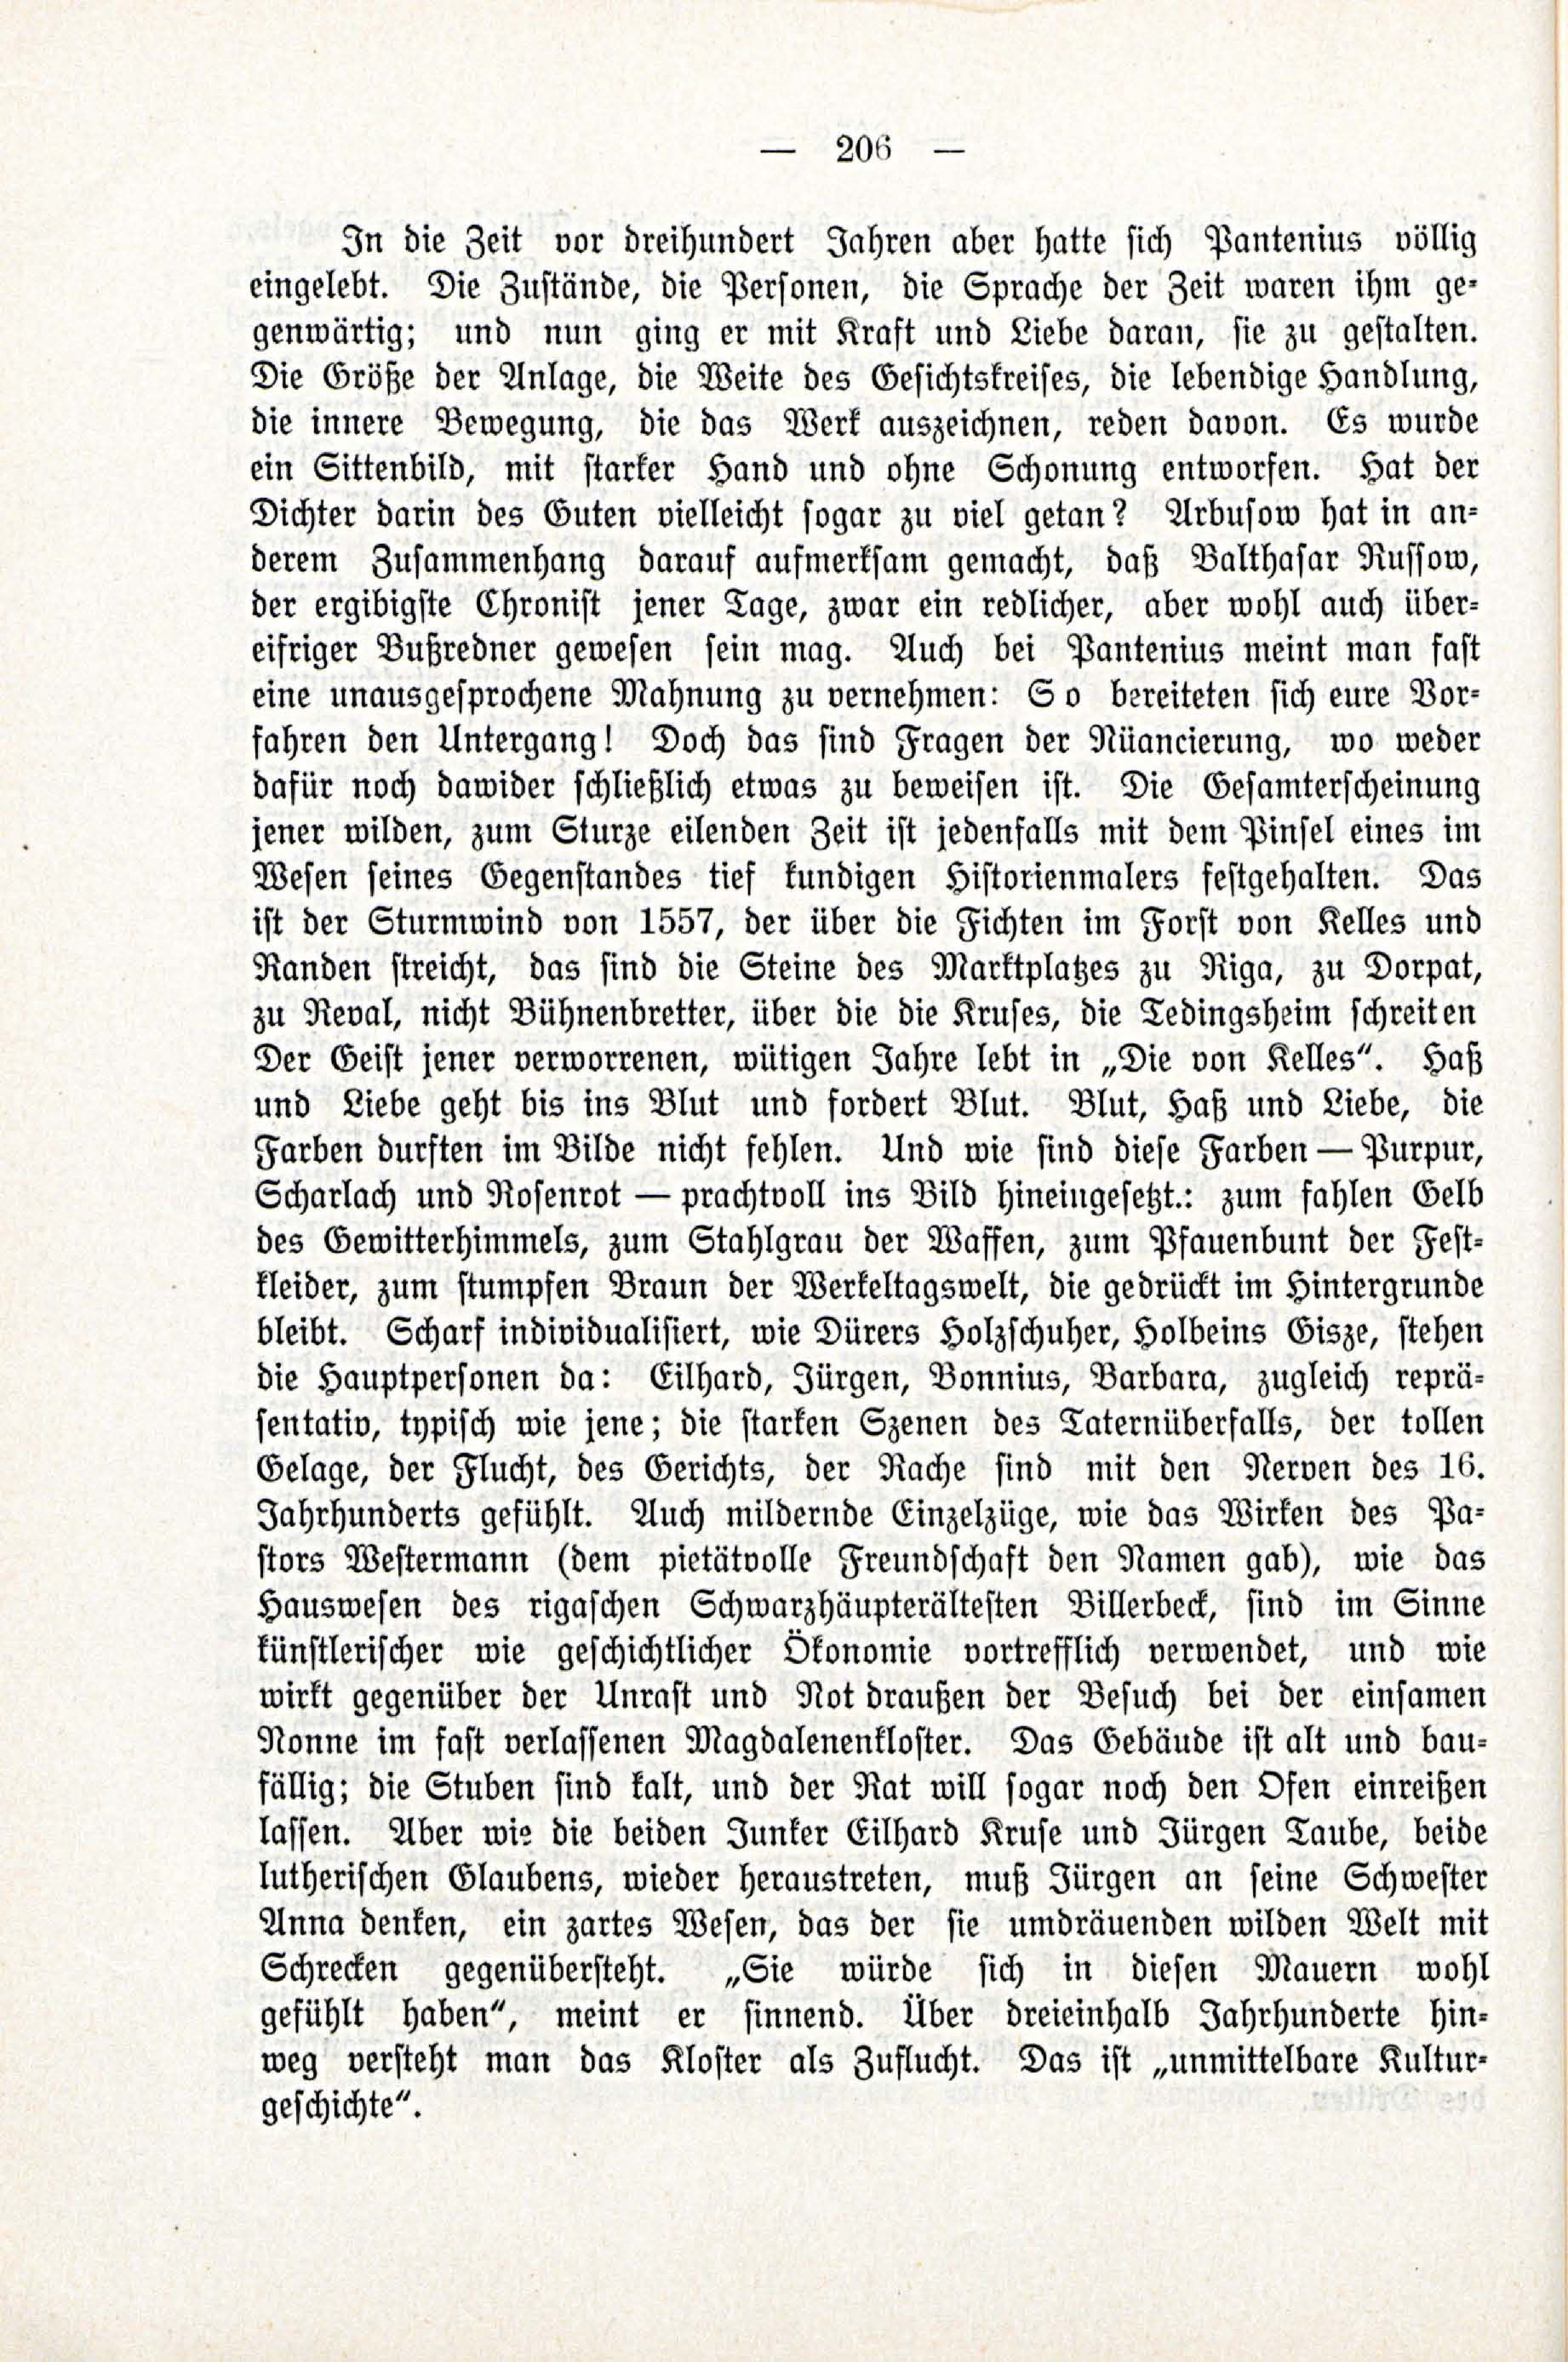 Deutsche Monatsschrift für Russland [3/03] (1914) | 52. (206) Main body of text